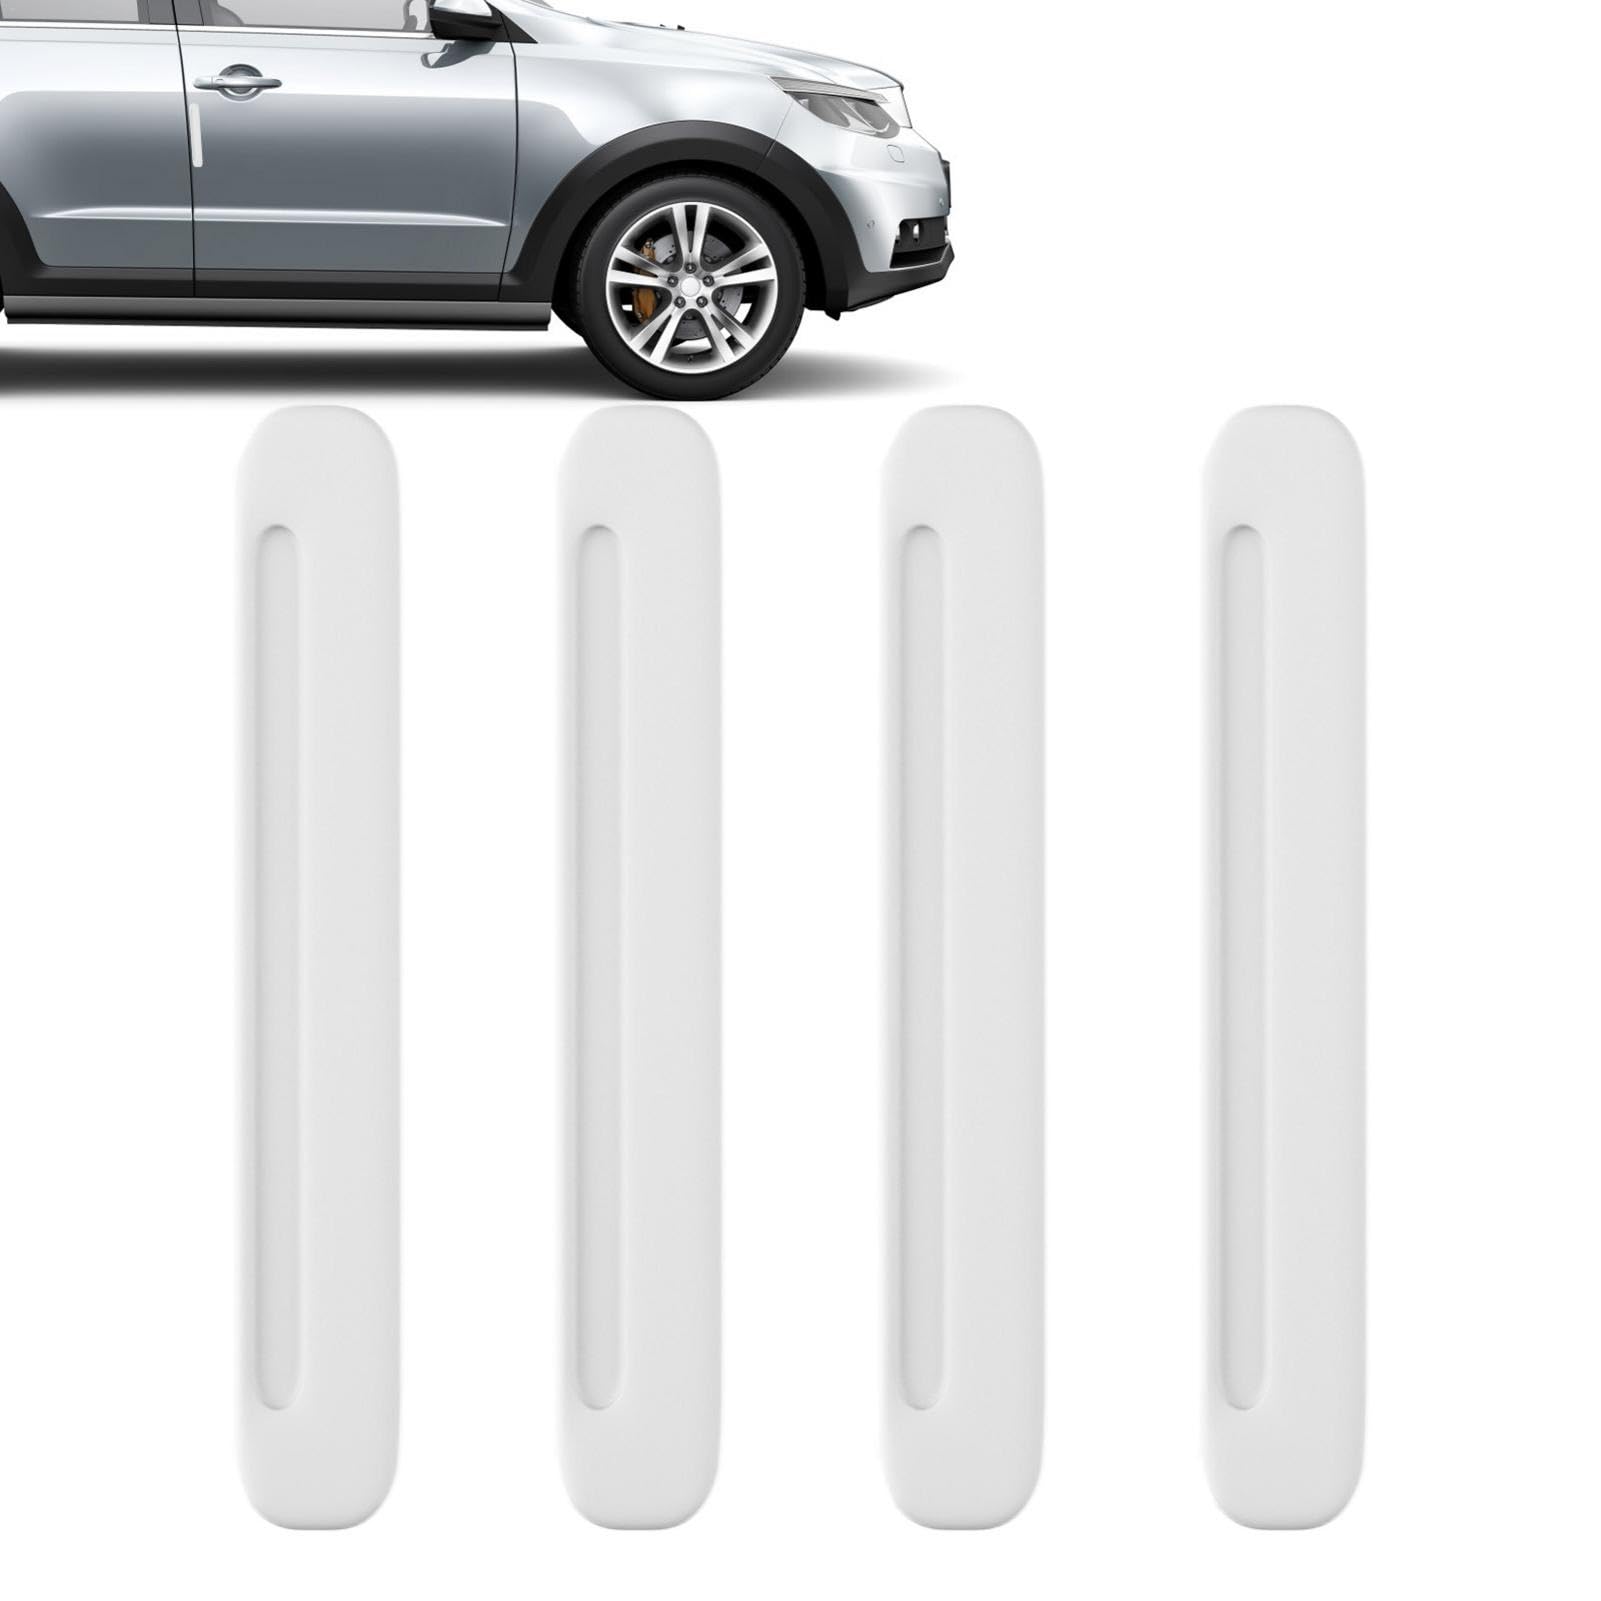 Besreey Auto-Heckstoßstangenleiste, Auto-Stoßstangenschutzleiste | 4 Stück Kratzfeste Autotür-Stoßstangenaufkleber - Unsichtbare verlängerte Autotür-Stoßstangenleiste für die vordere und hintere Ecke von Besreey